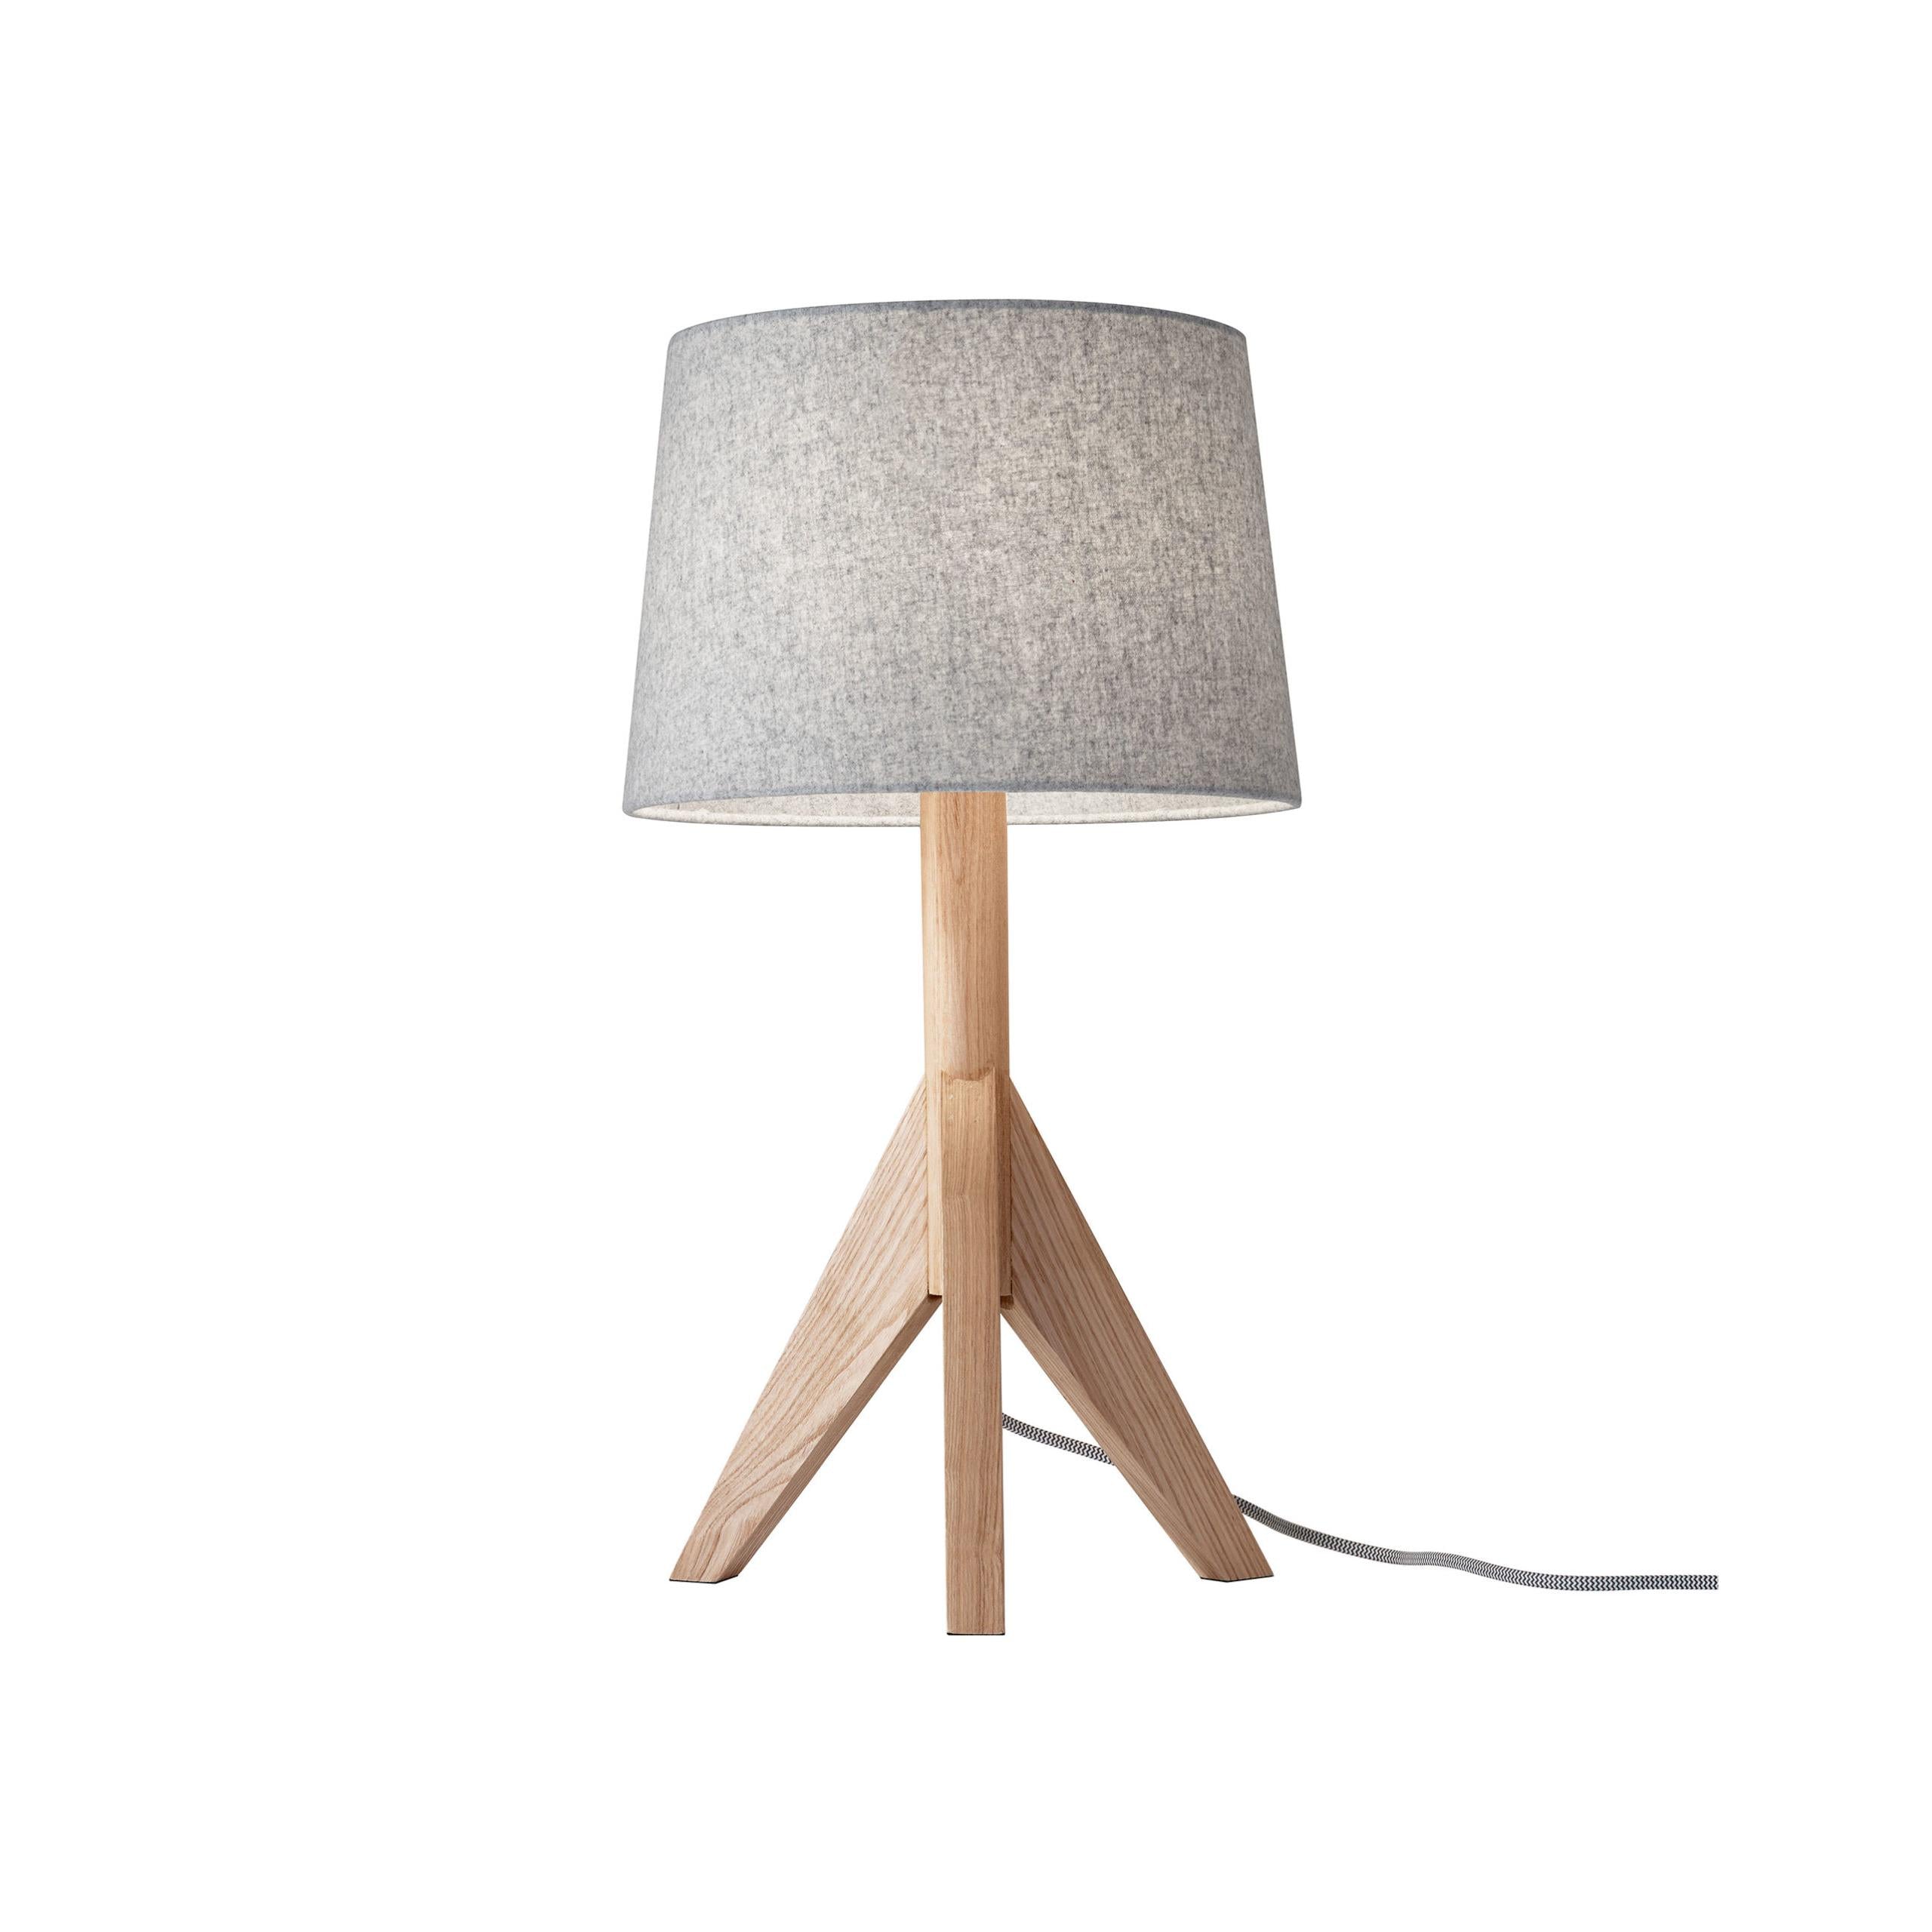 EDEN Lampe sur table Bois - 3207-12 | ADESSO